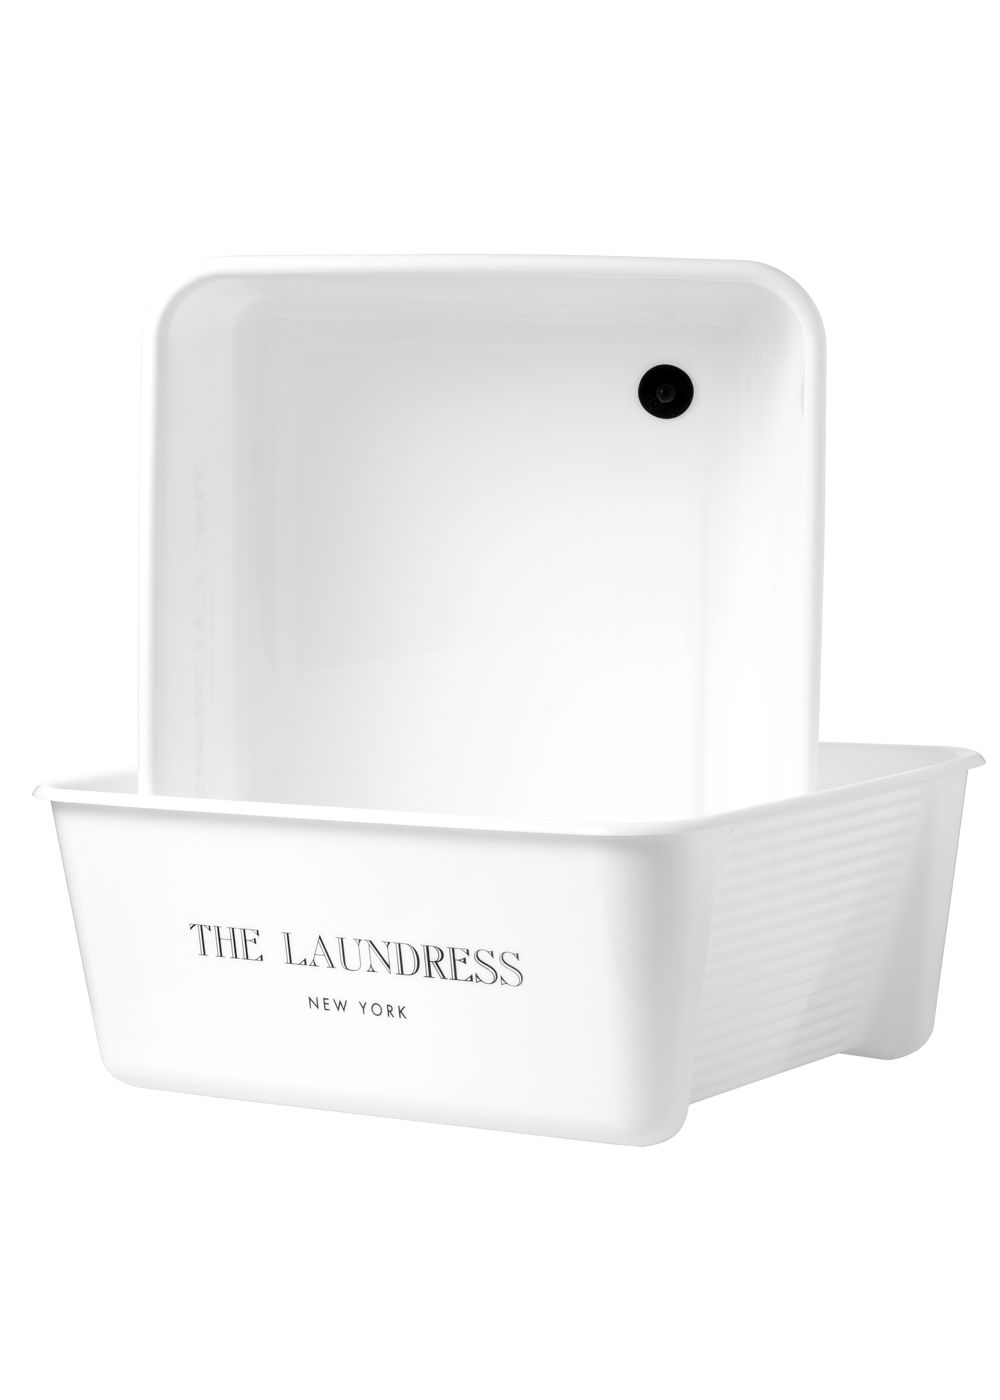 Wash Tub Basin | The Laundress